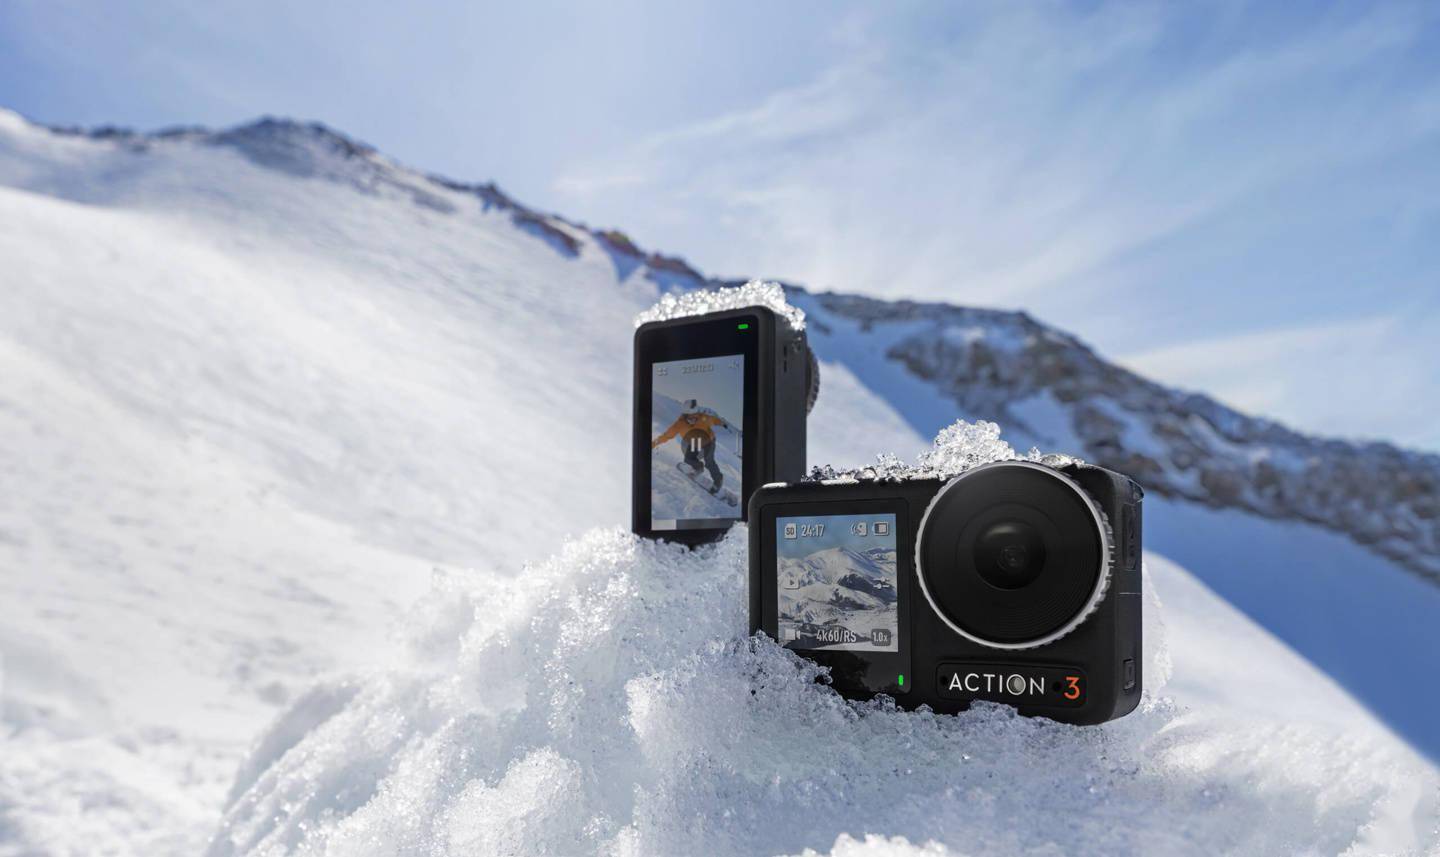 大疆Osmo action 4运动相机外观曝光 配备视角155° f/2.8镜头